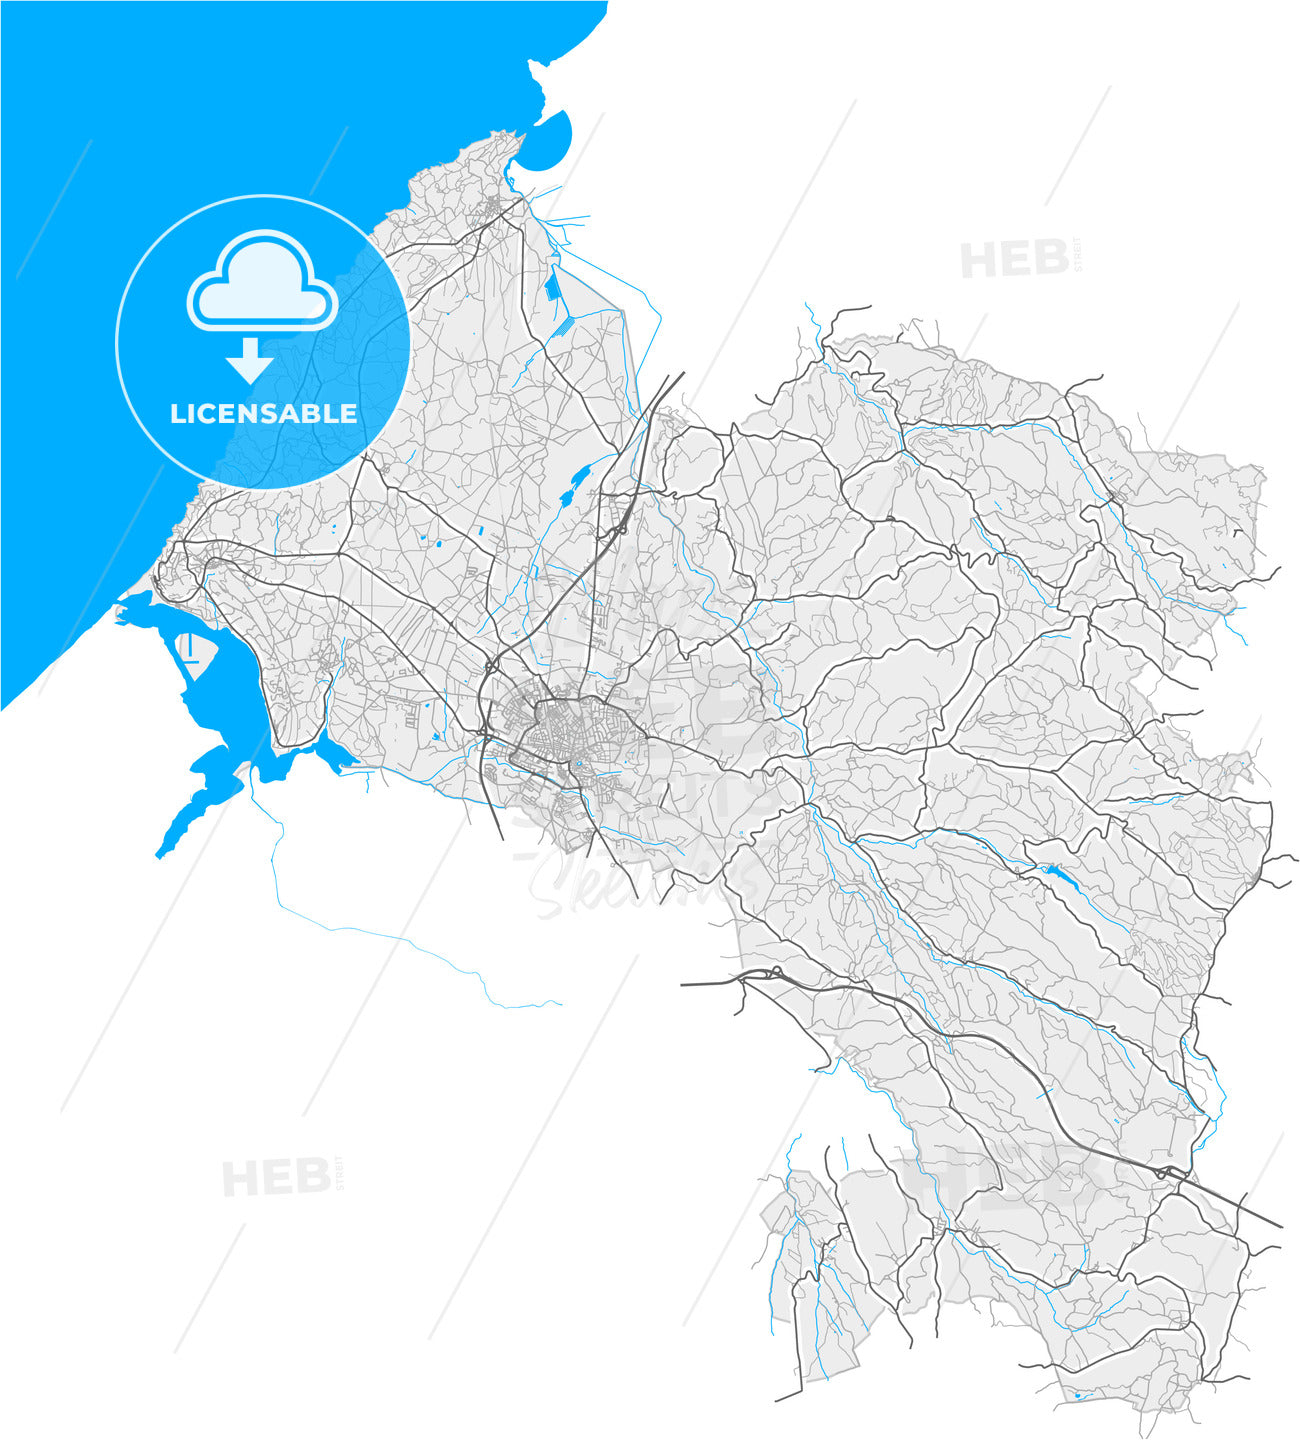 Caldas da Rainha, Leiria, Portugal, high quality vector map